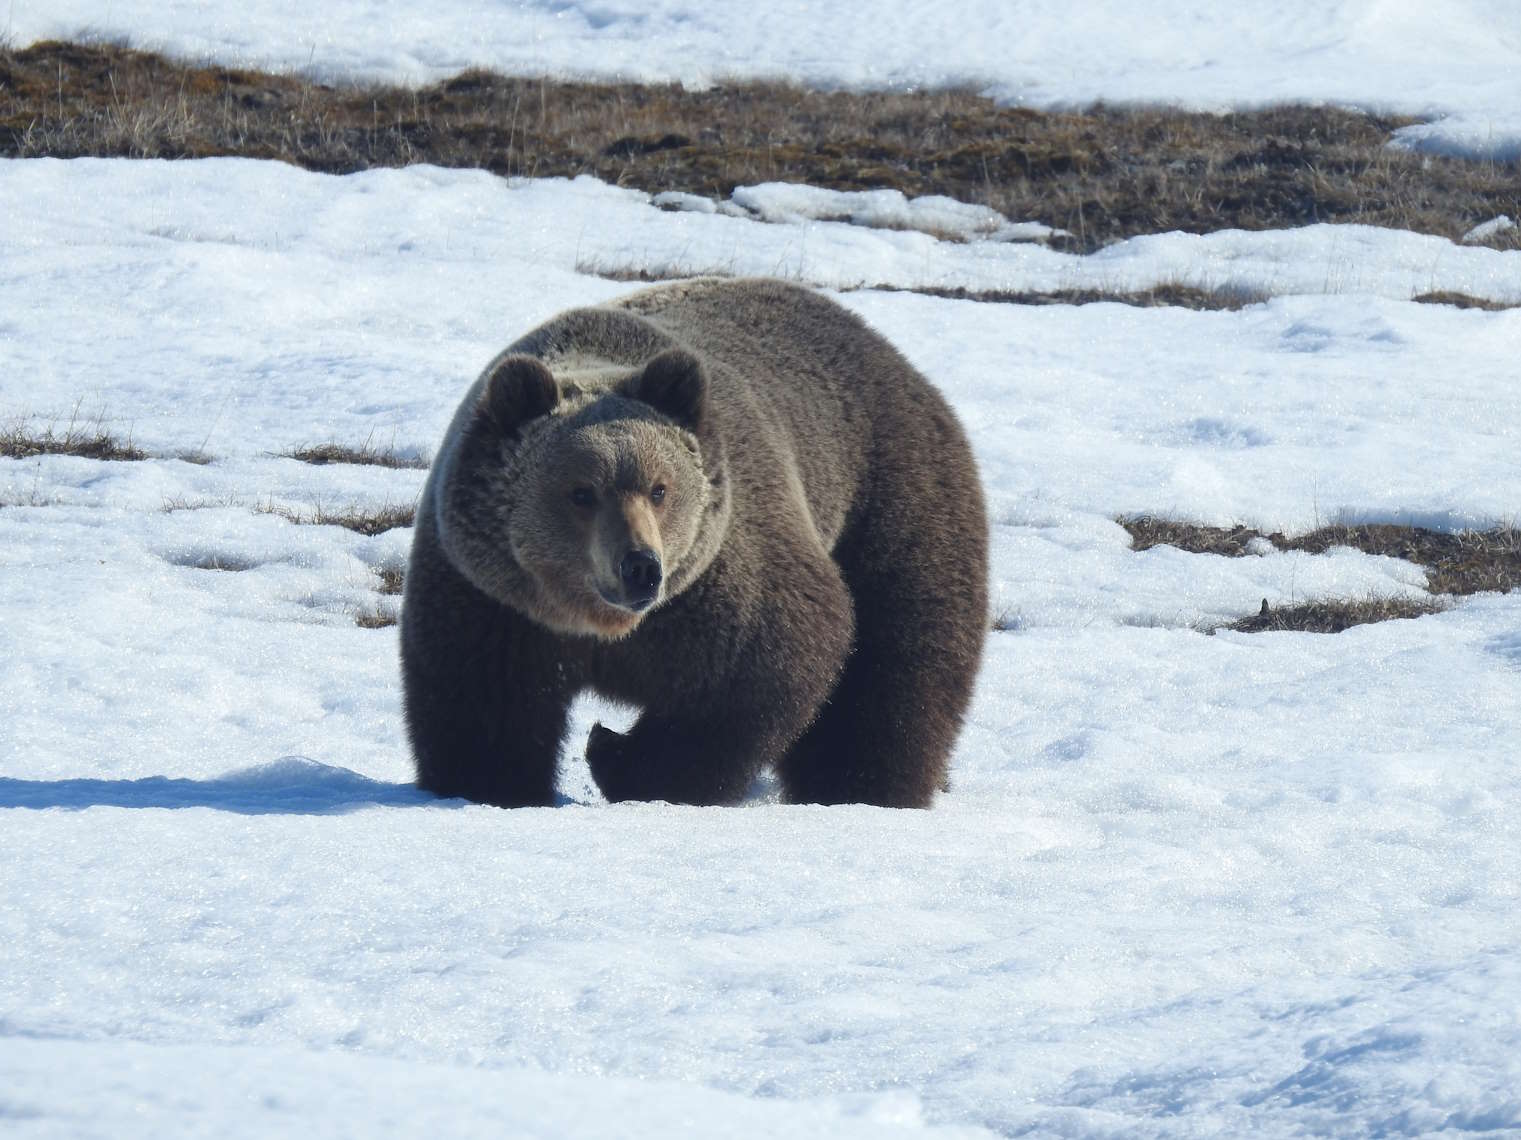 Белый, гималайский, бурый: ко Дню медведя сотрудники заповедных территорий рассказали об изучении косолапых - фото 1